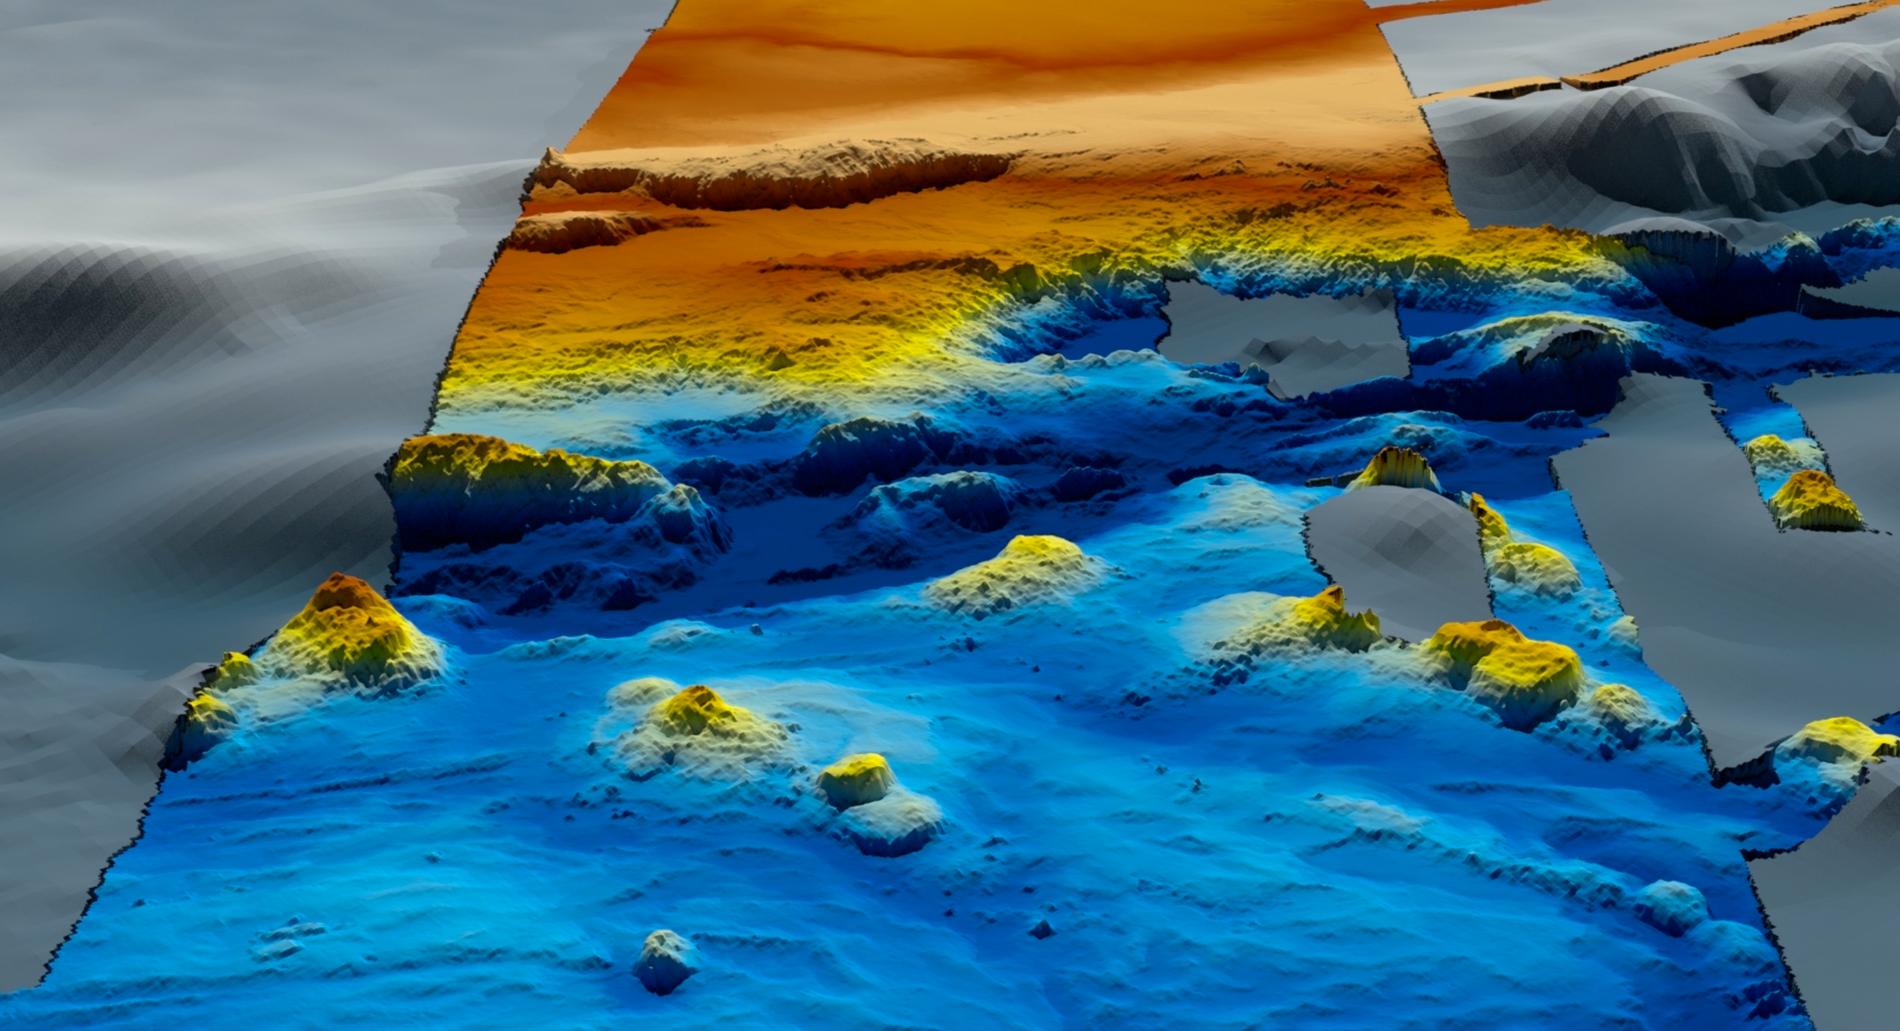 Detaljerade topografiska kartor över havsbotten har kunnat göras efter det tidigare sökarbetet